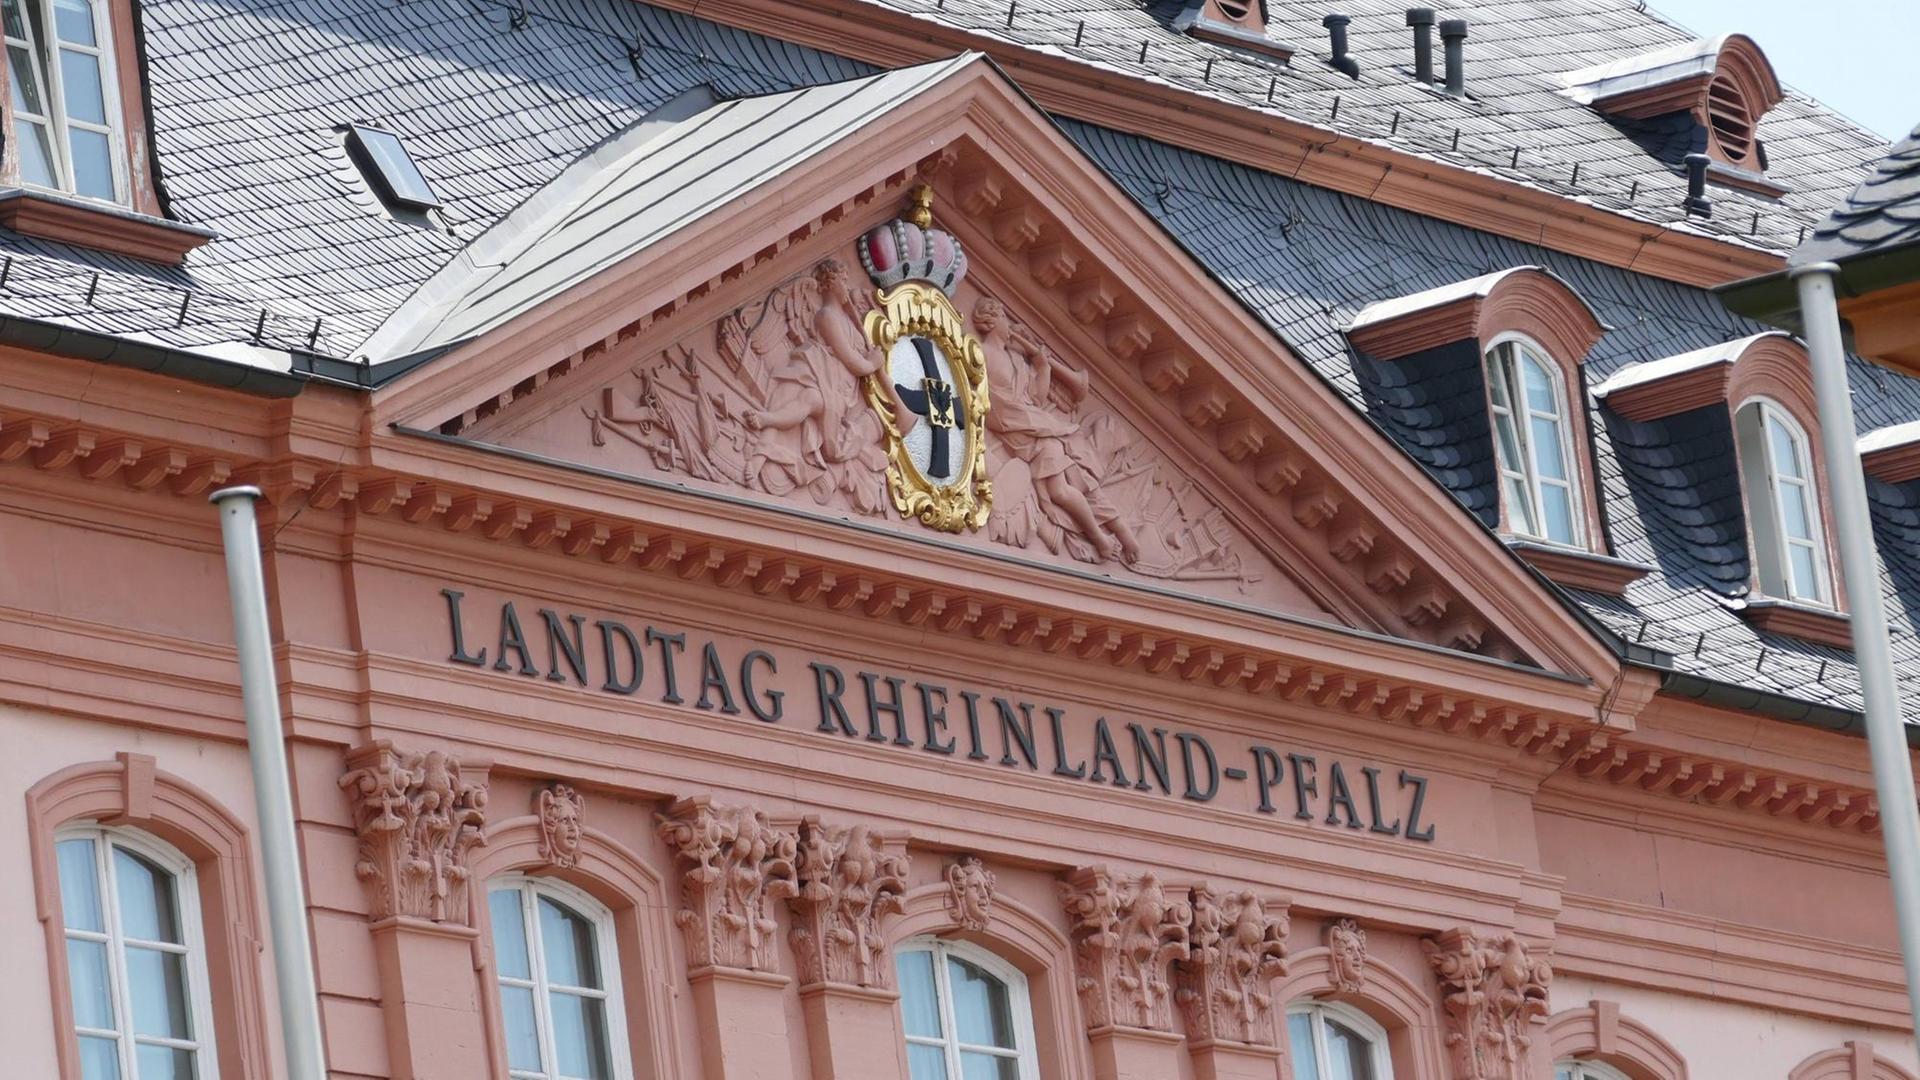 Außenaufnahme Landtagsgebäude in Mainz mit der Aufschrift "Landtag Rheinland-Pfalz"